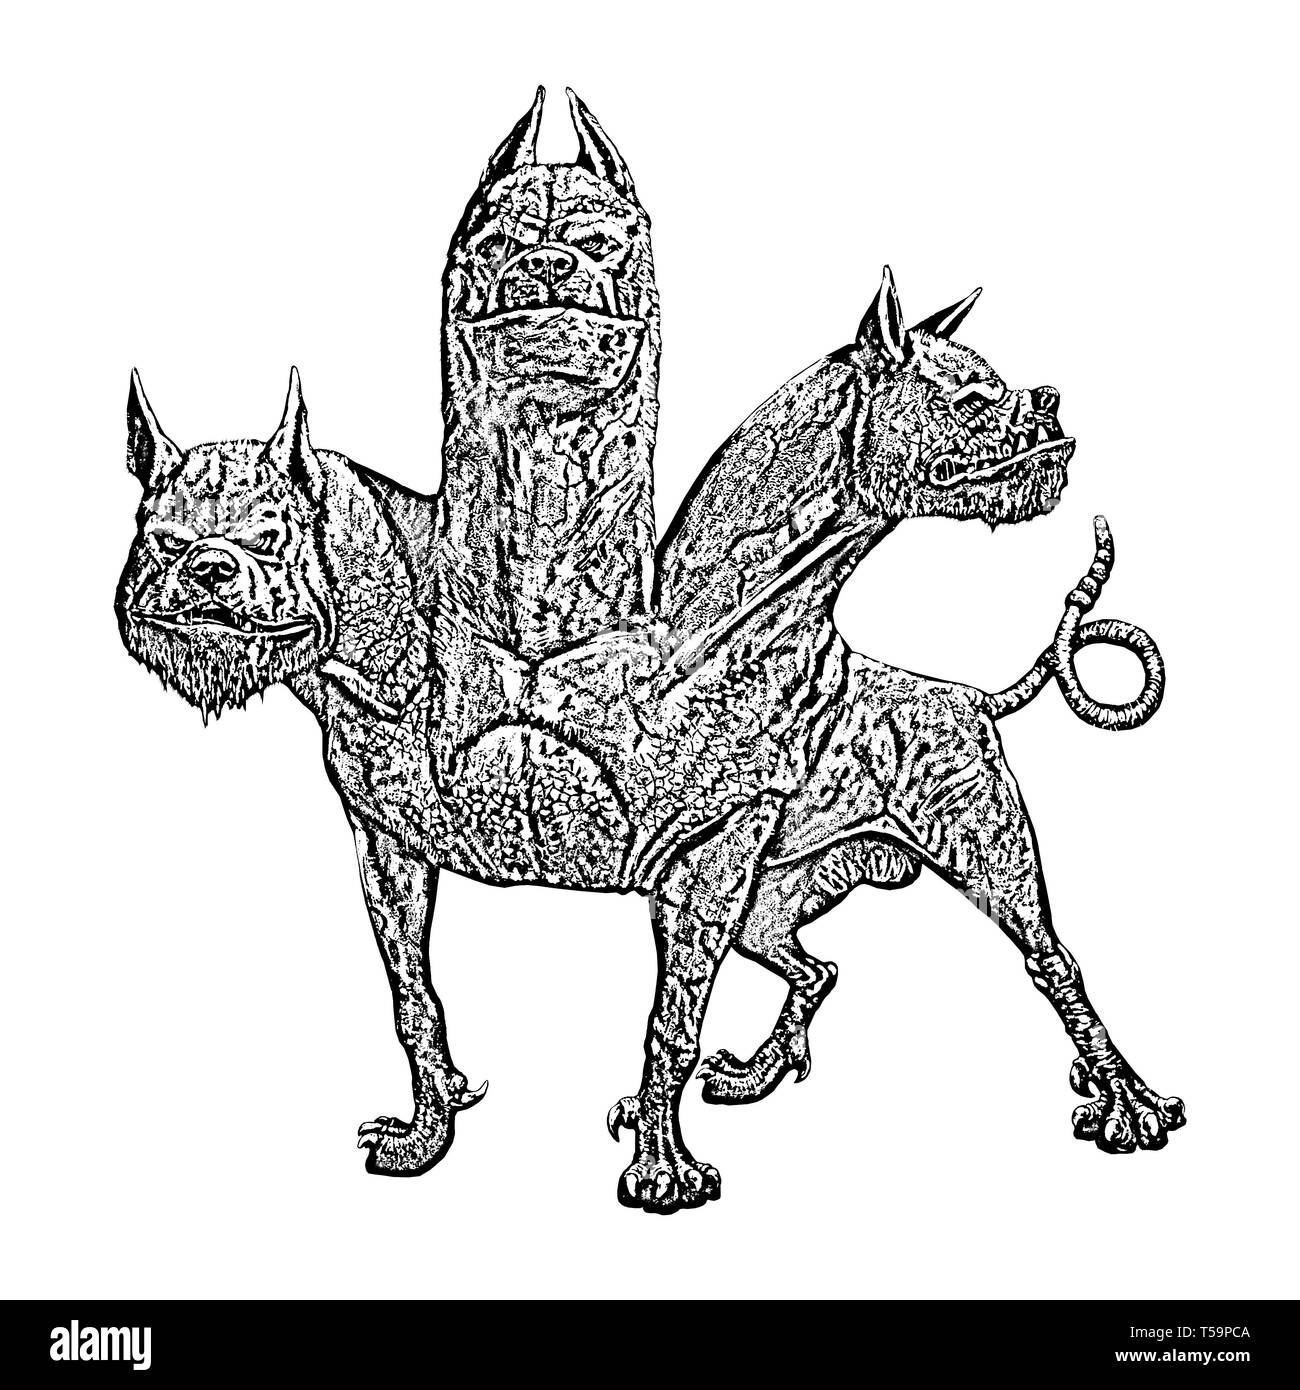 Multi vorangegangen Hund Cerberus Abbildung. Hund der Hades. Der  griechischen Mythologie Stockfotografie - Alamy